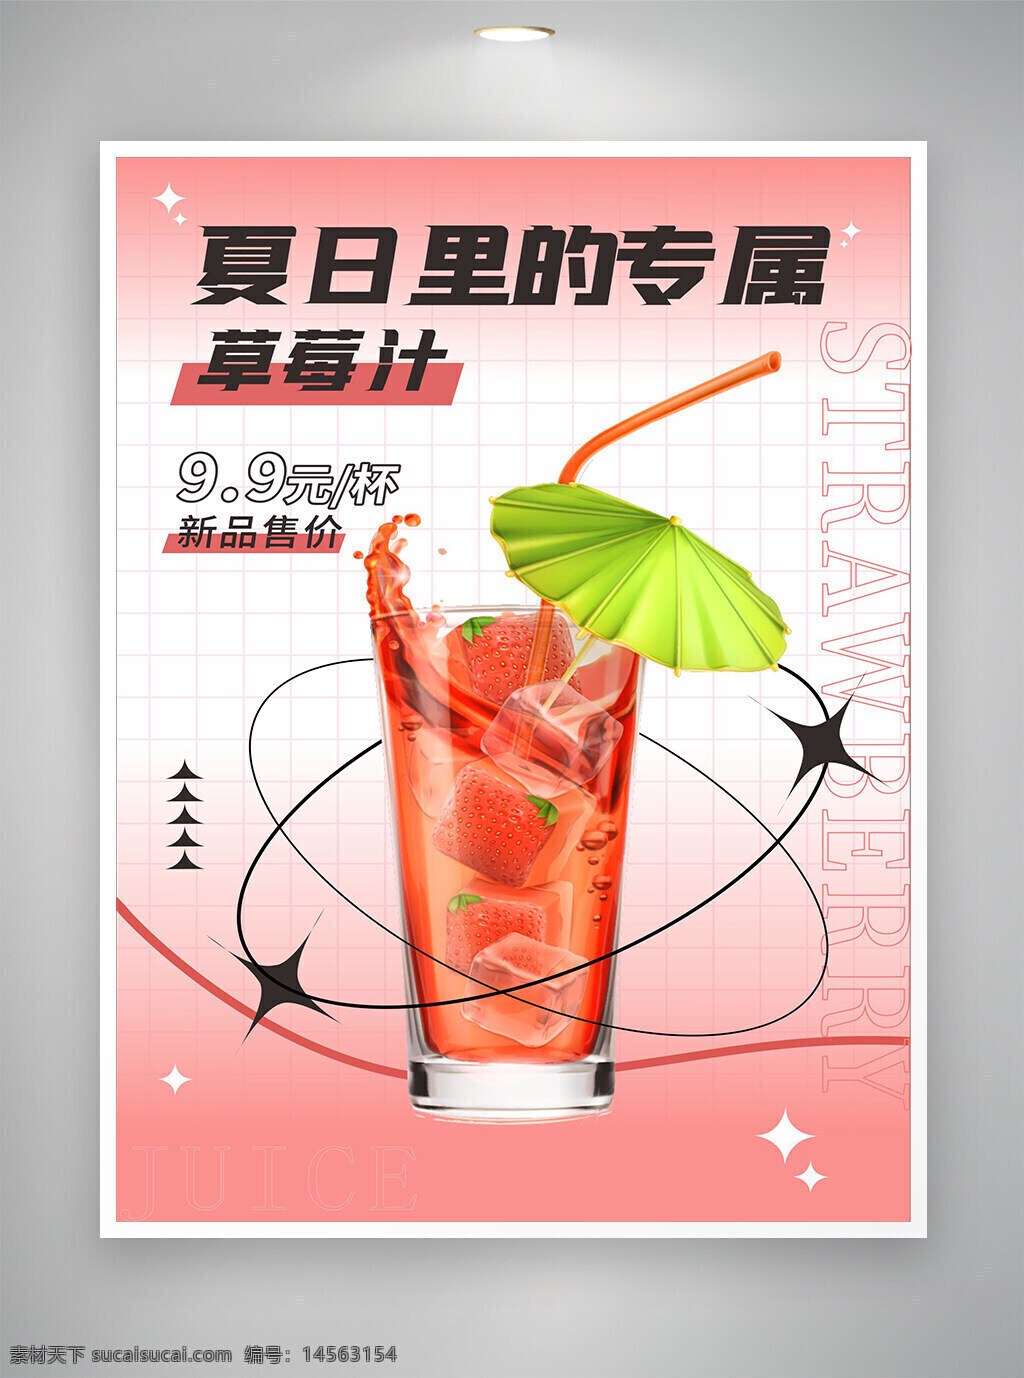 夏日海报 夏日饮品海报 草莓汁 草莓饮品海报 草莓宣传海报 夏日专属 新品海报 新品特价